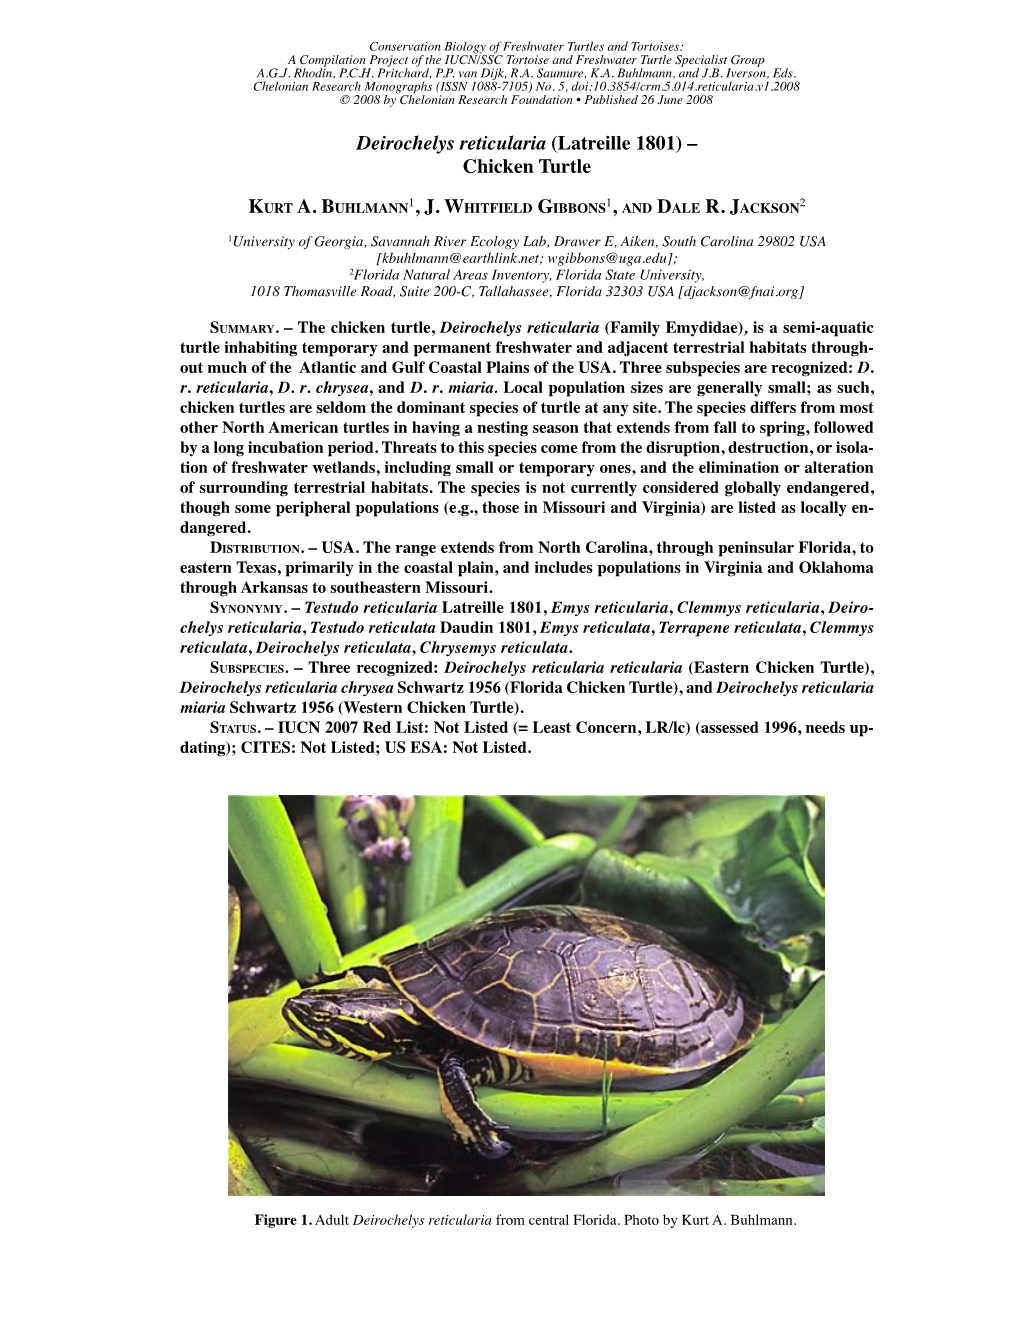 Deirochelys Reticularia (Latreille 1801) – Chicken Turtle